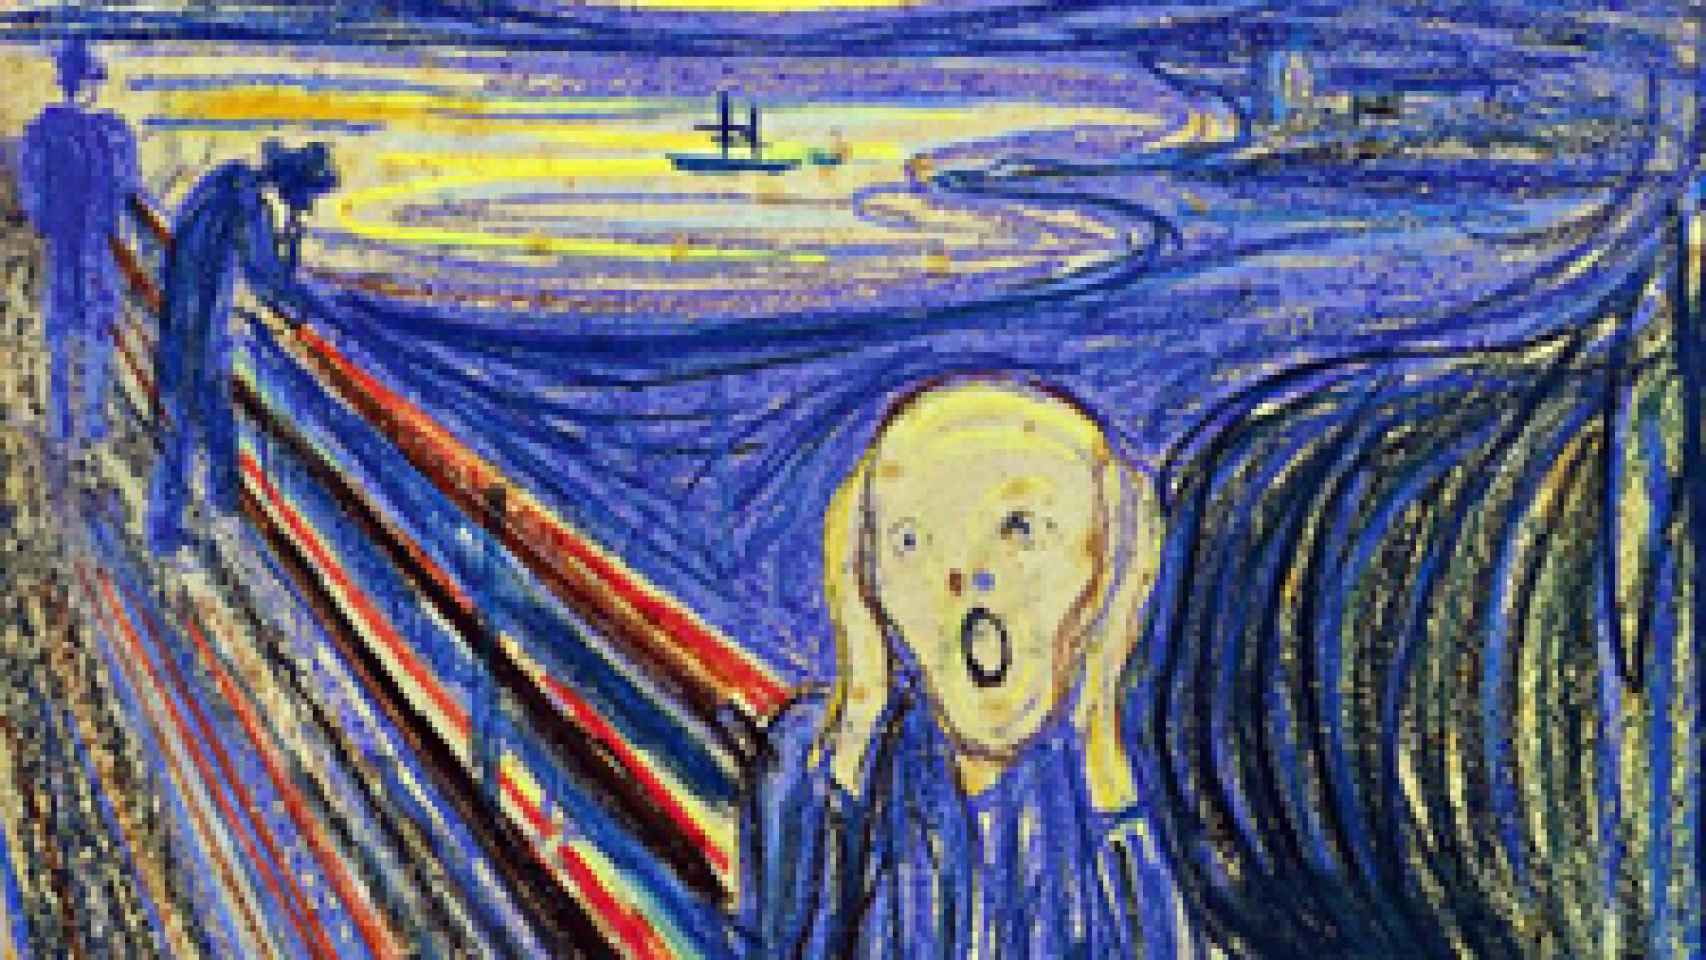 Image: 91 millones de euros por El Grito de Munch